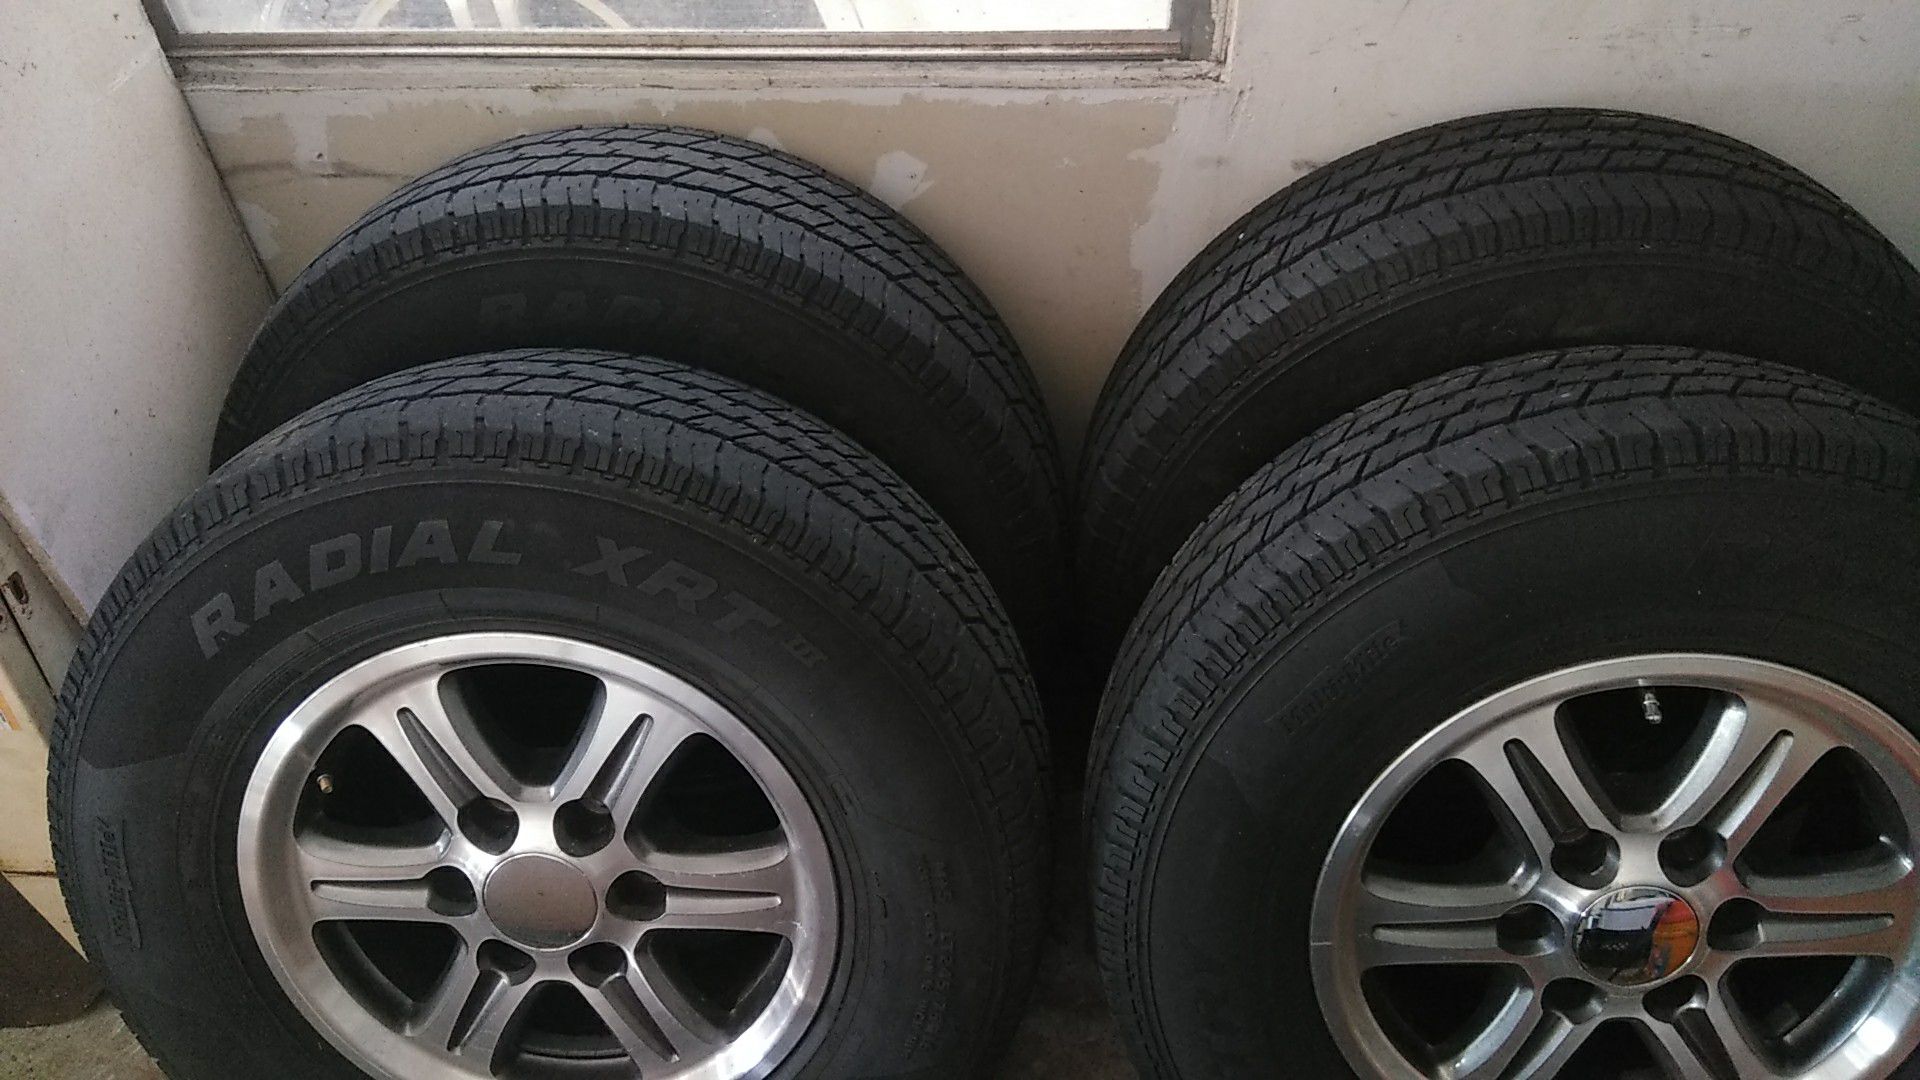 LT245/75R16 Tires